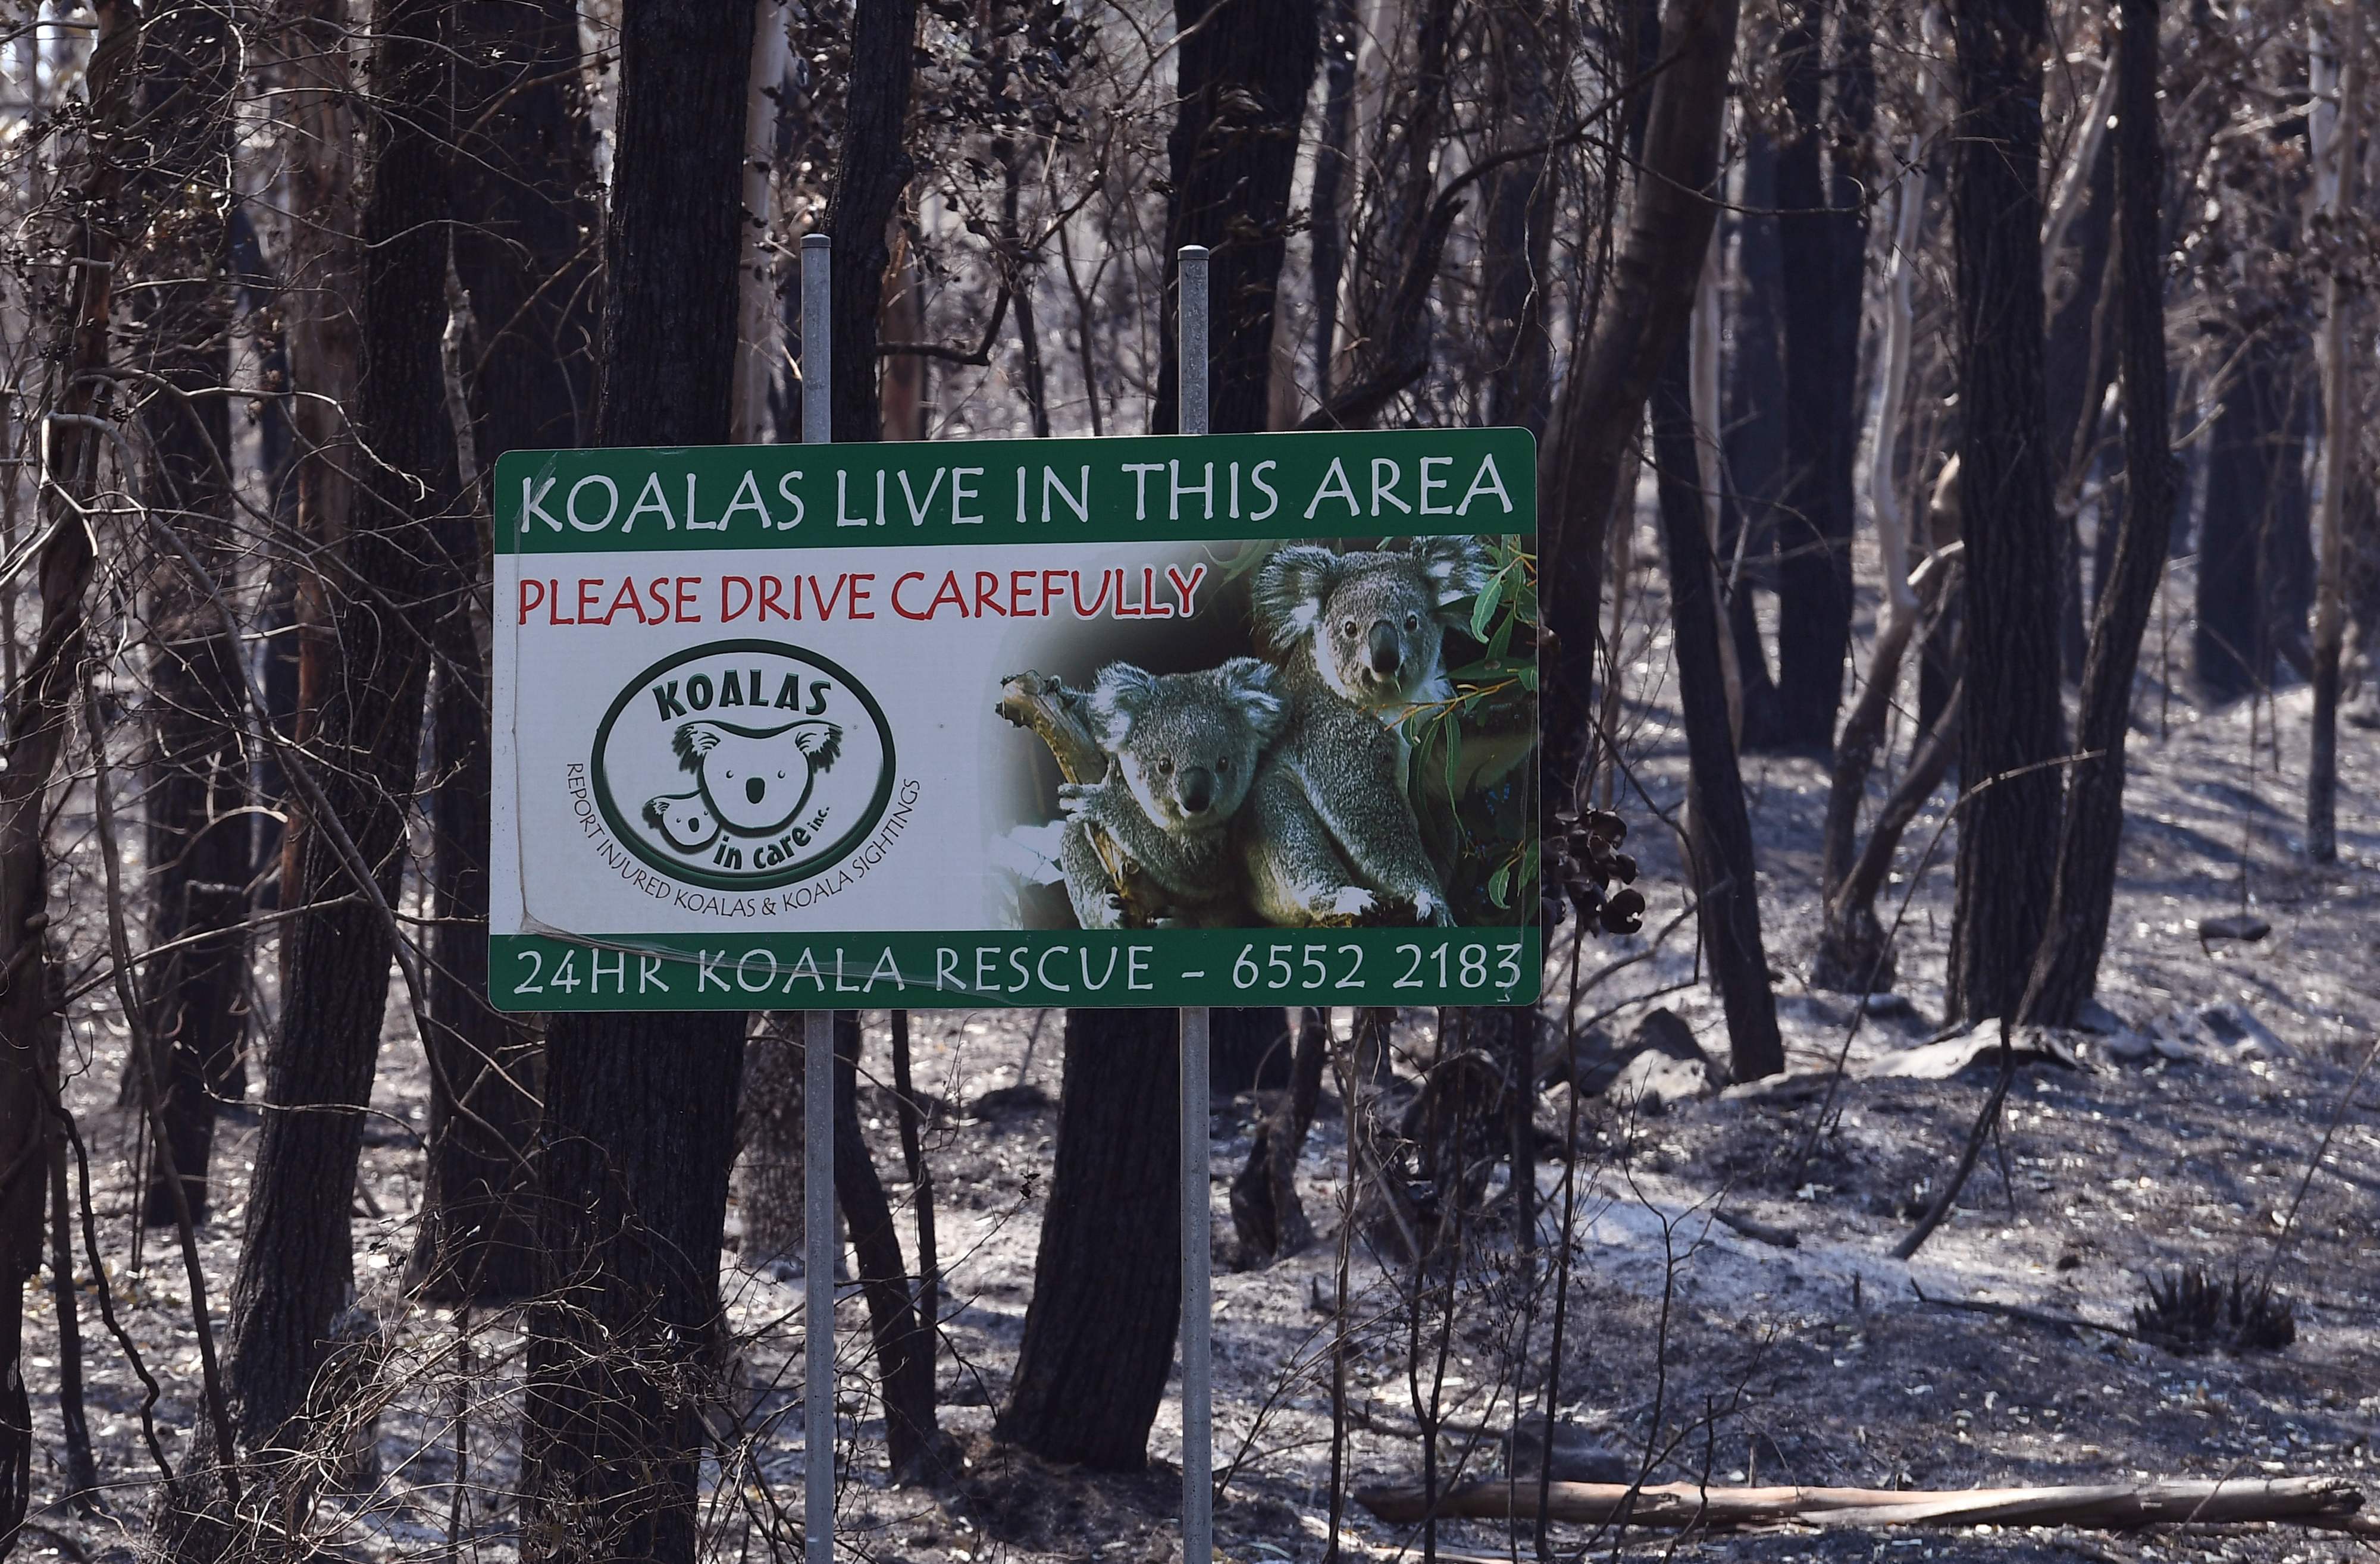 Un letrero que indica que los koalas viven en el área, se encuentra en un bosque quemado cerca de la ciudad de Taree, a unos 350 kilómetros al norte de Sydney. (Foto Prensa Libre: AFP)